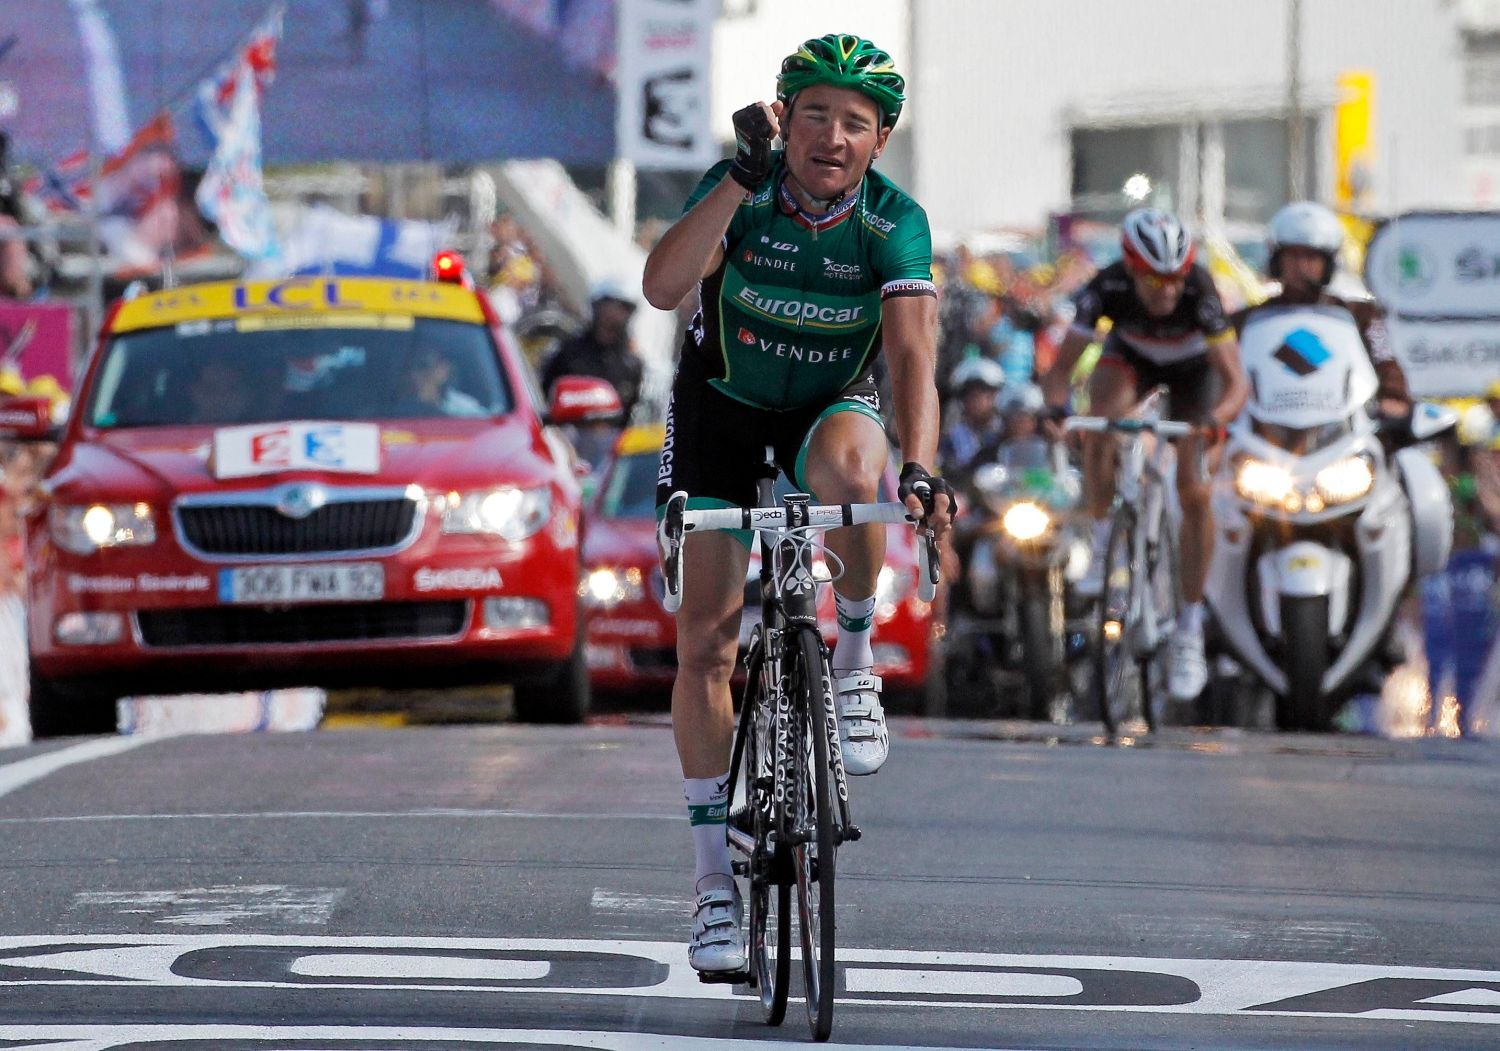 Francouzský cyklista Thomas Voeckler ze stáje Europcar se raduje z vítězství v desáté etapě Tour de France 2012.